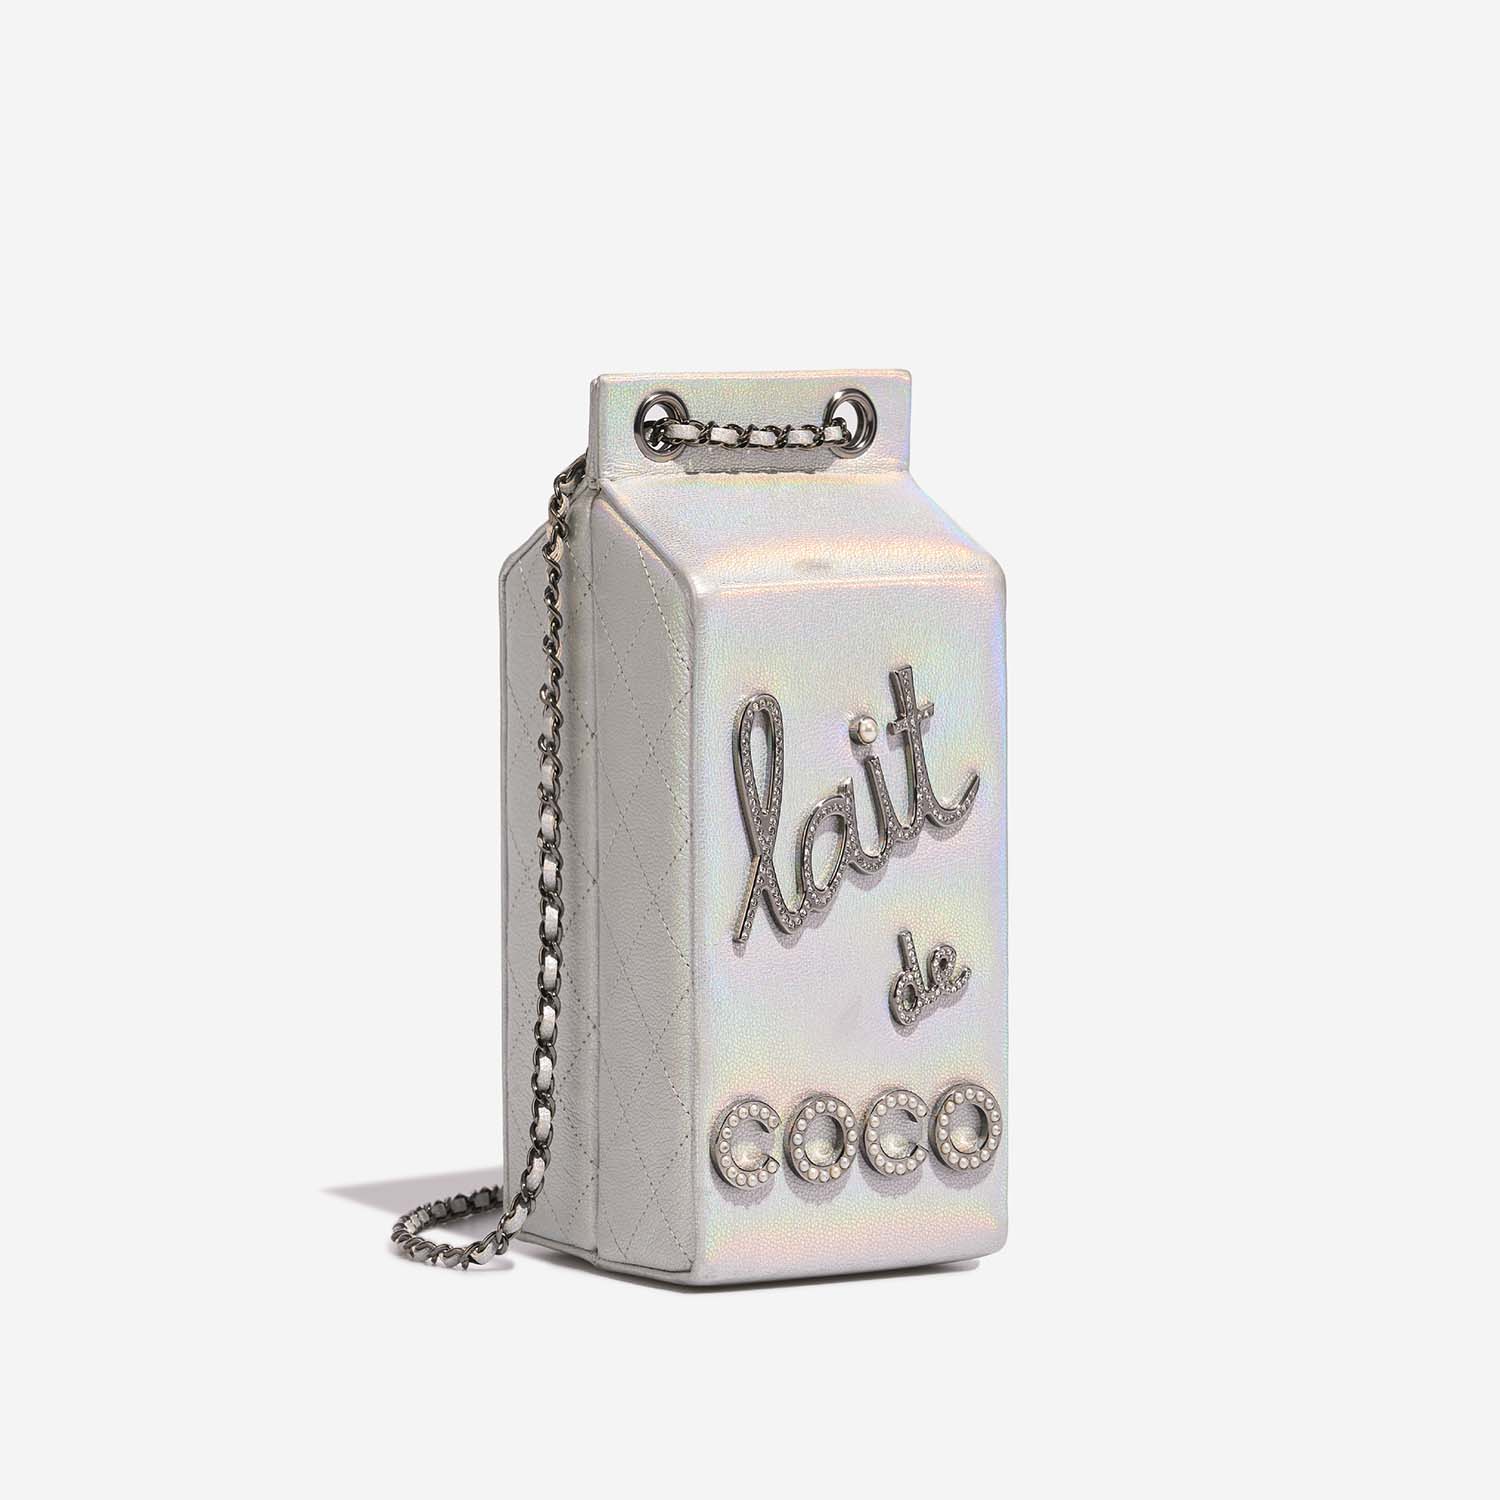 Chanel MilkCarton Silver Side Front | Verkaufen Sie Ihre Designer-Tasche auf Saclab.com